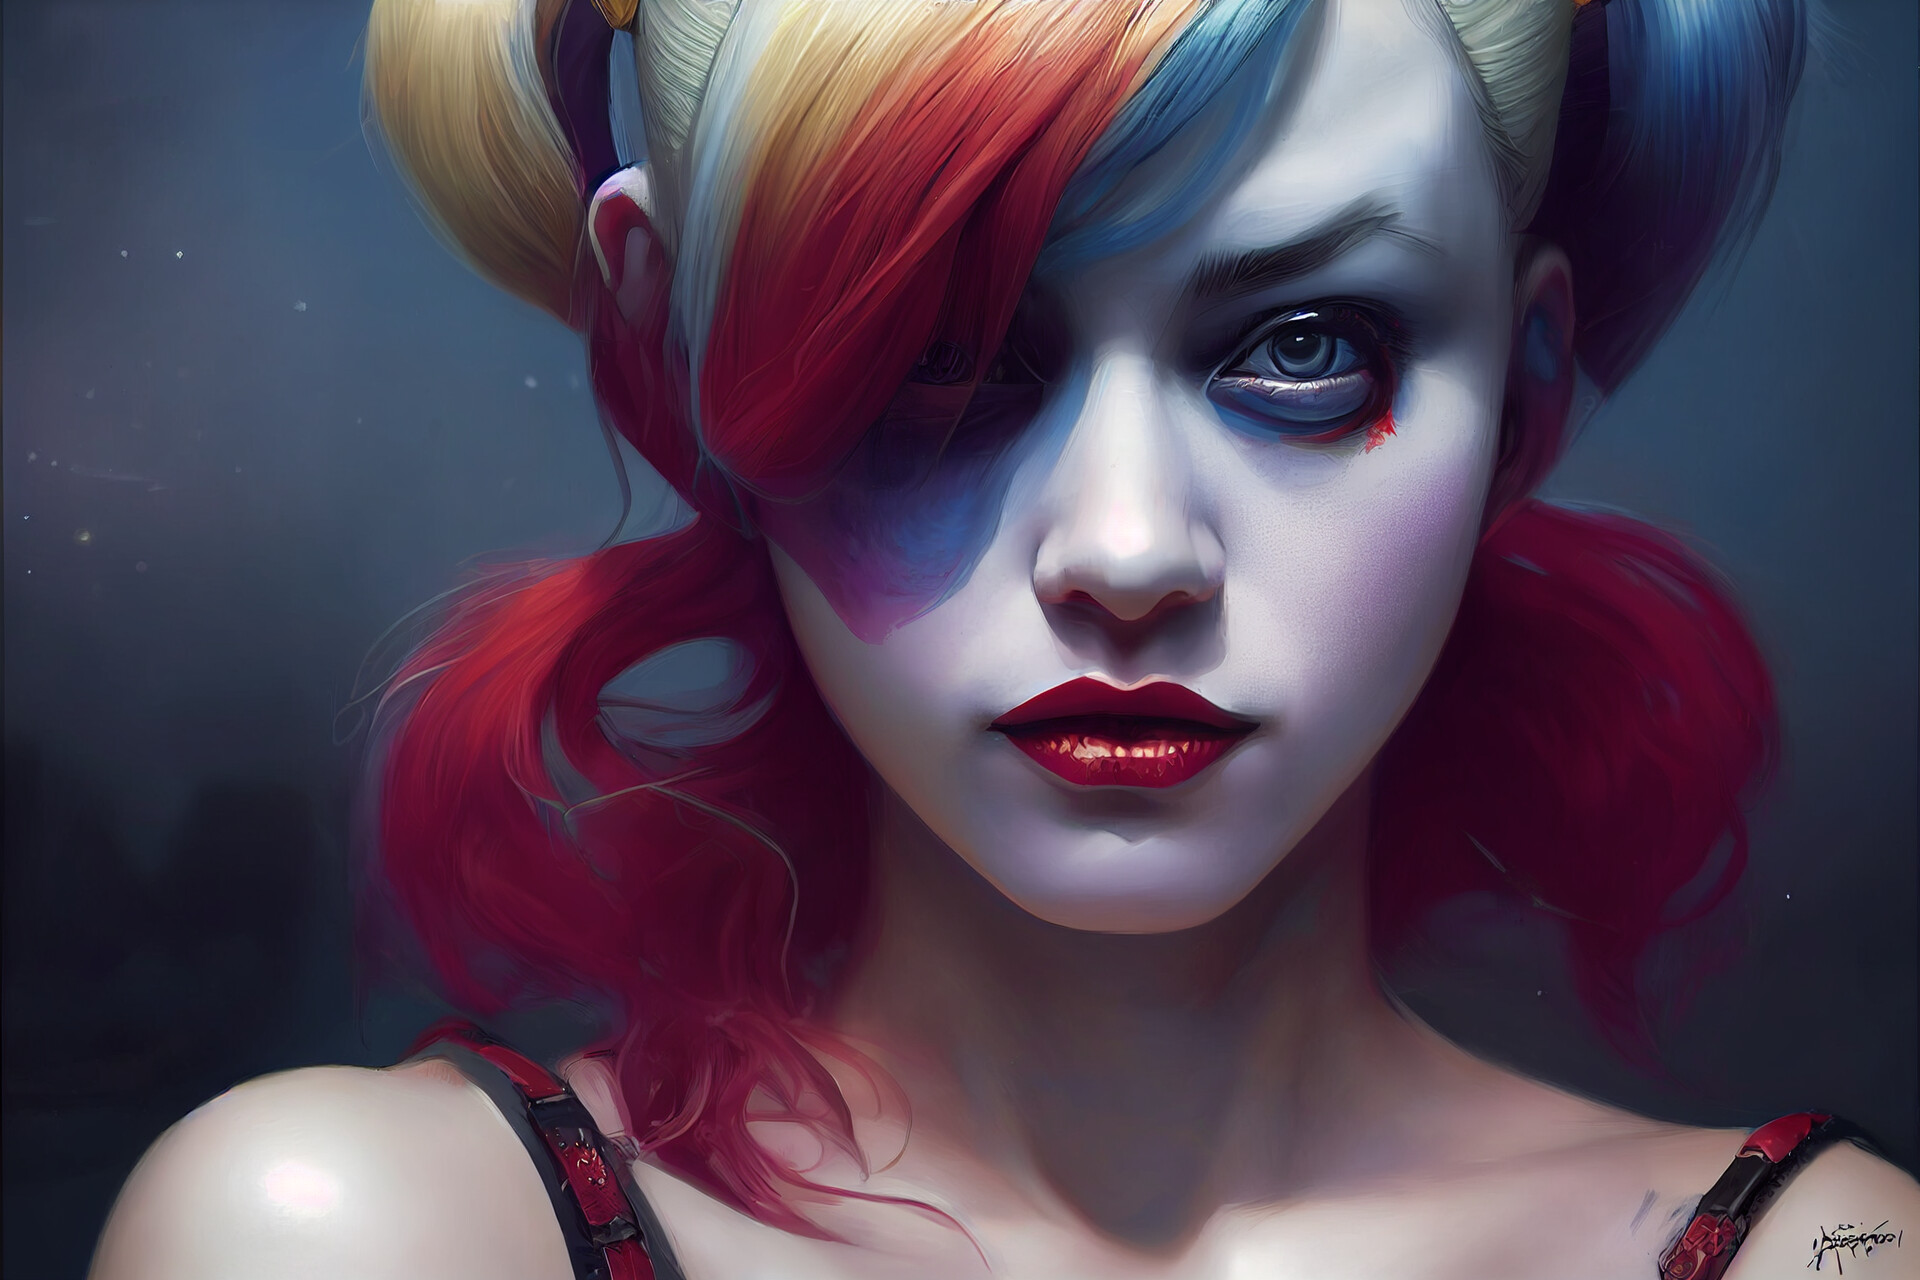 ArtStation - Harley Quinn